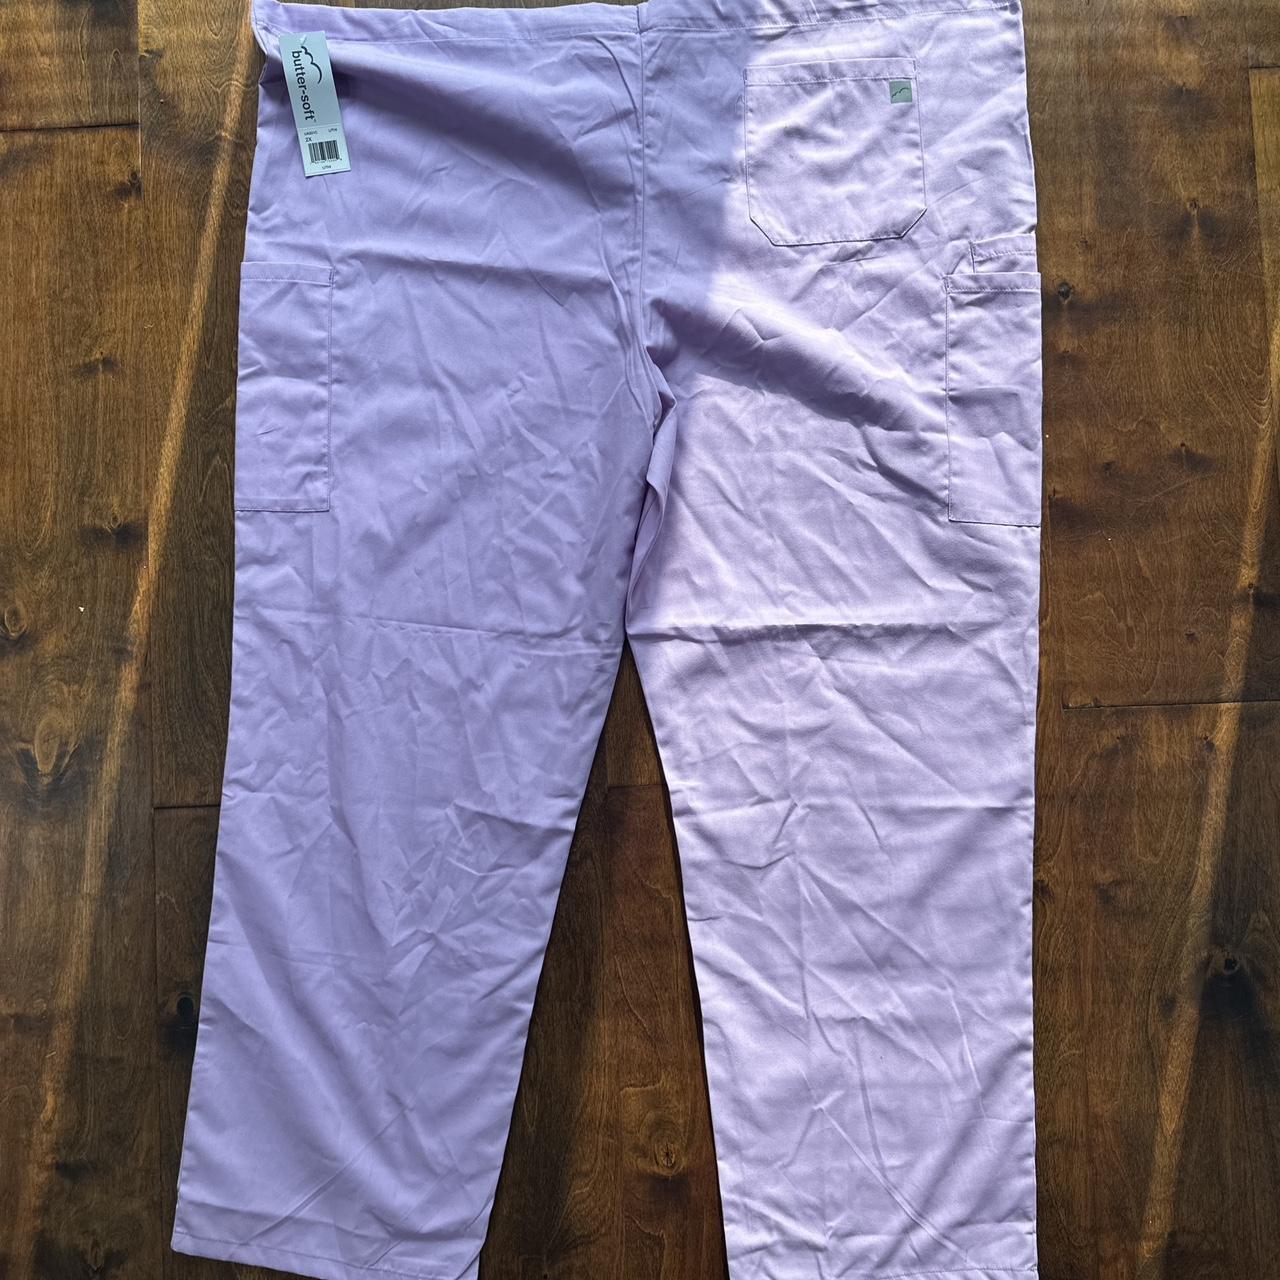 Women's Gray Uniform Advantage Scrub Pants Size XL RN#116892